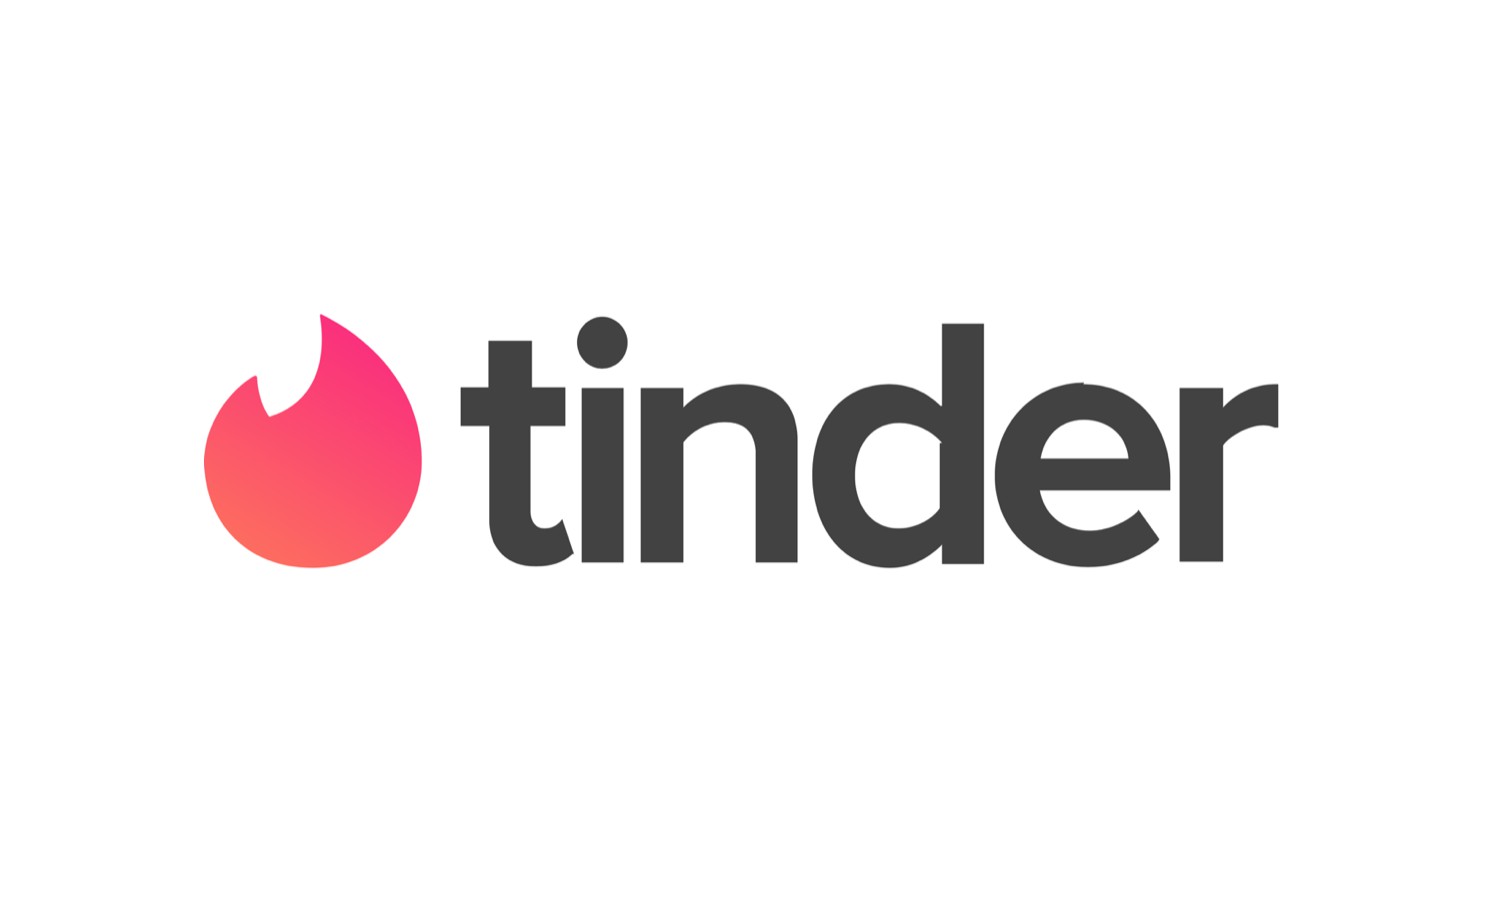 Plus code tinder promotion Tinder Gold